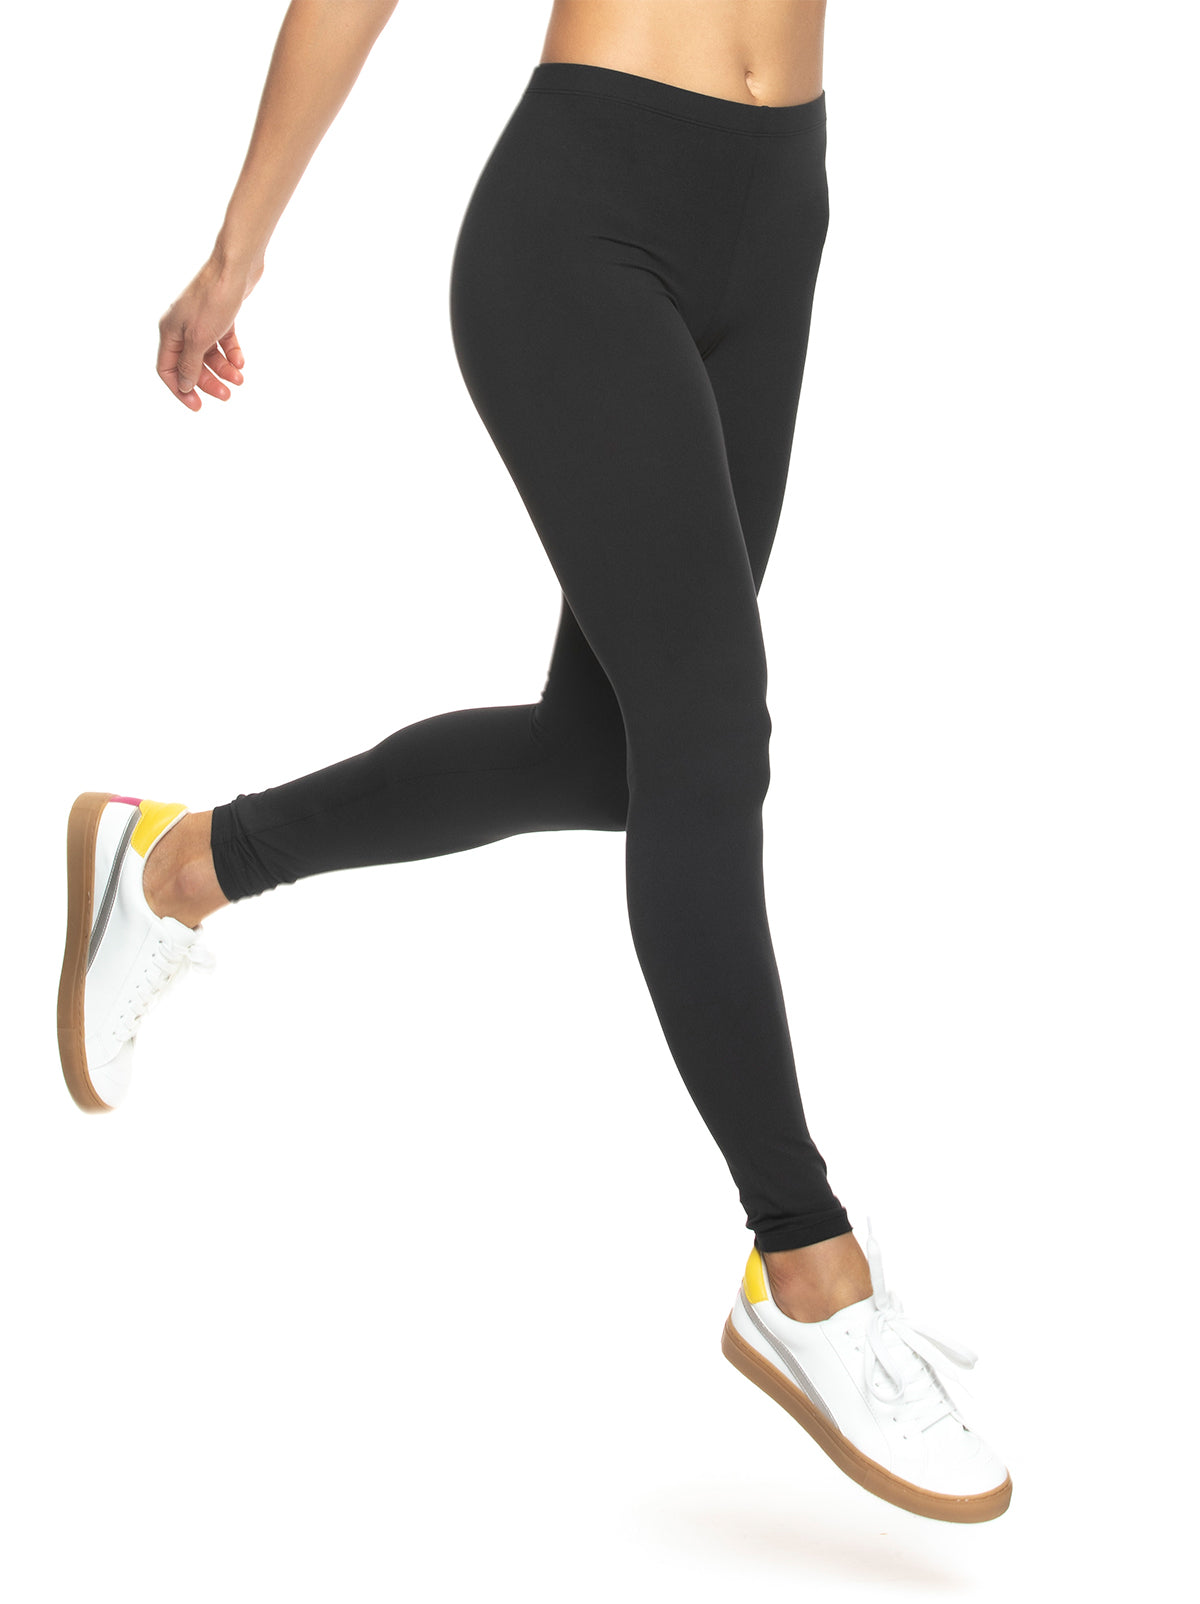 Fashion Pants! Velvety Super Soft Lightweight Leggings For Women Sports  Running Fitness Yoga Pants M Dark Gray 